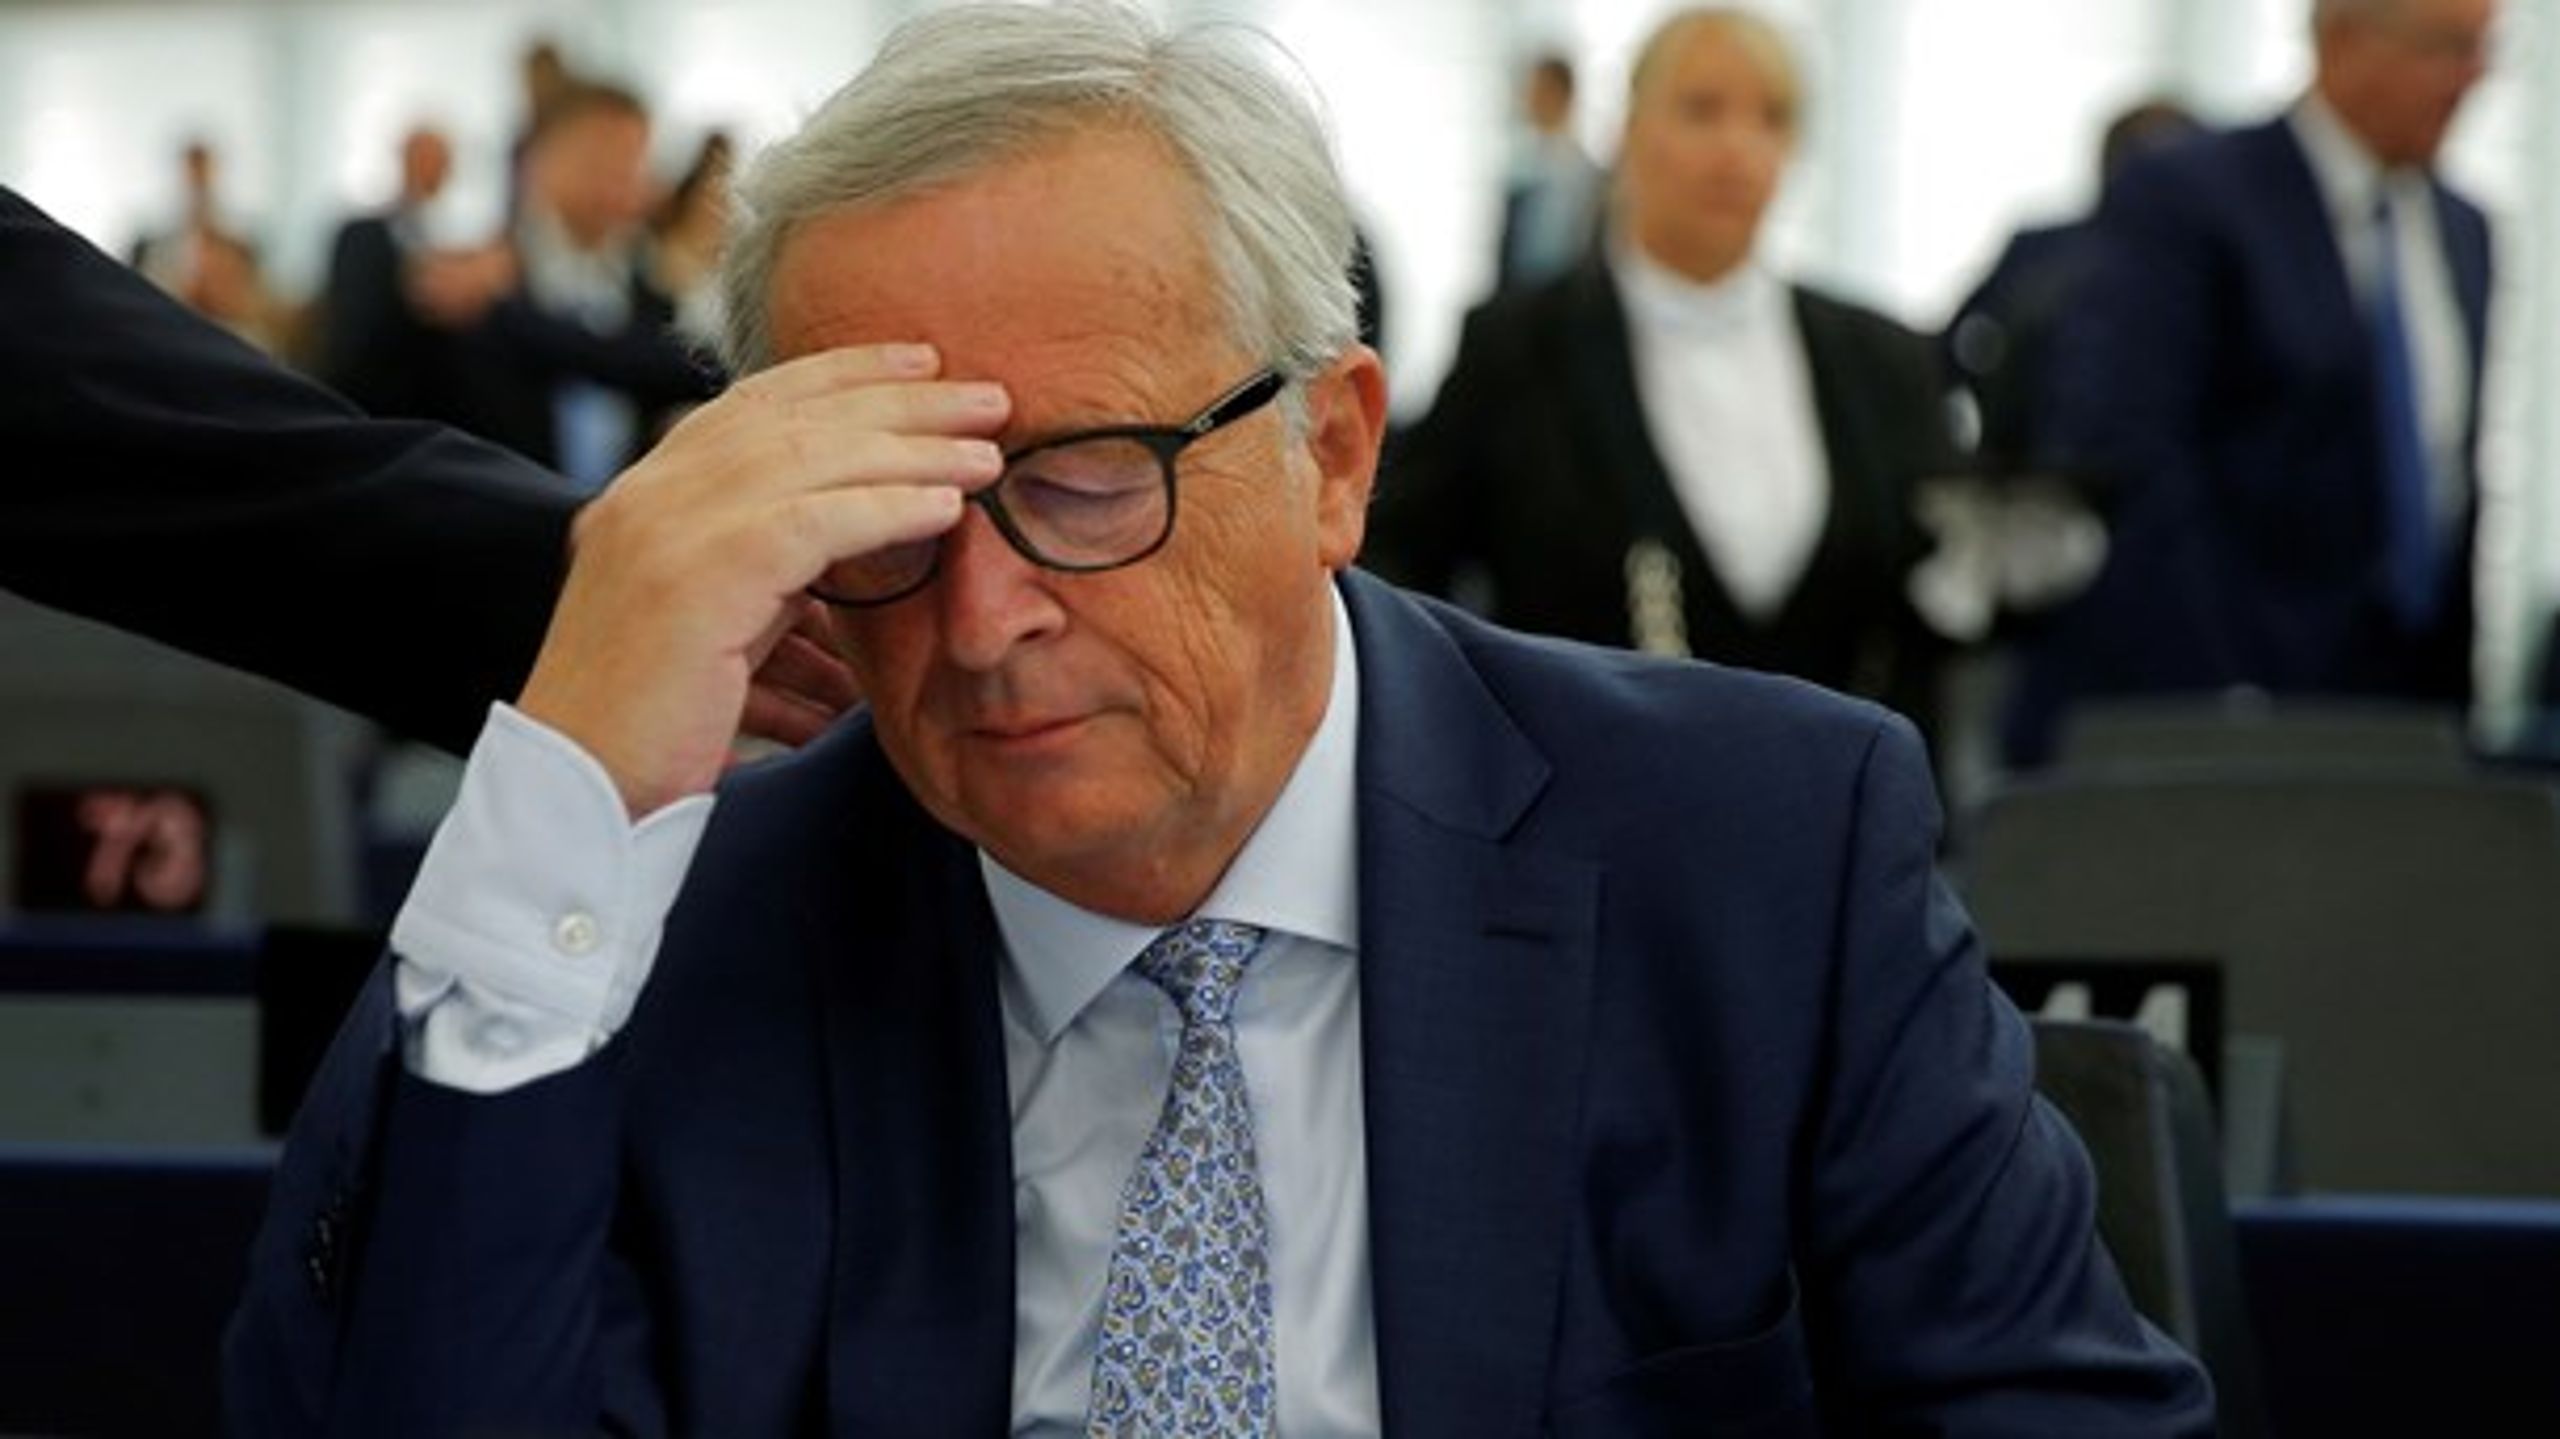 Det var en fejl, at Juncker overhovedet blev kommissionsformand. Efter fem år med ham i spidsen så trænger vi virkelig til at få nogle nye kræfter i front, skriver Peter Hummelgaard (S).